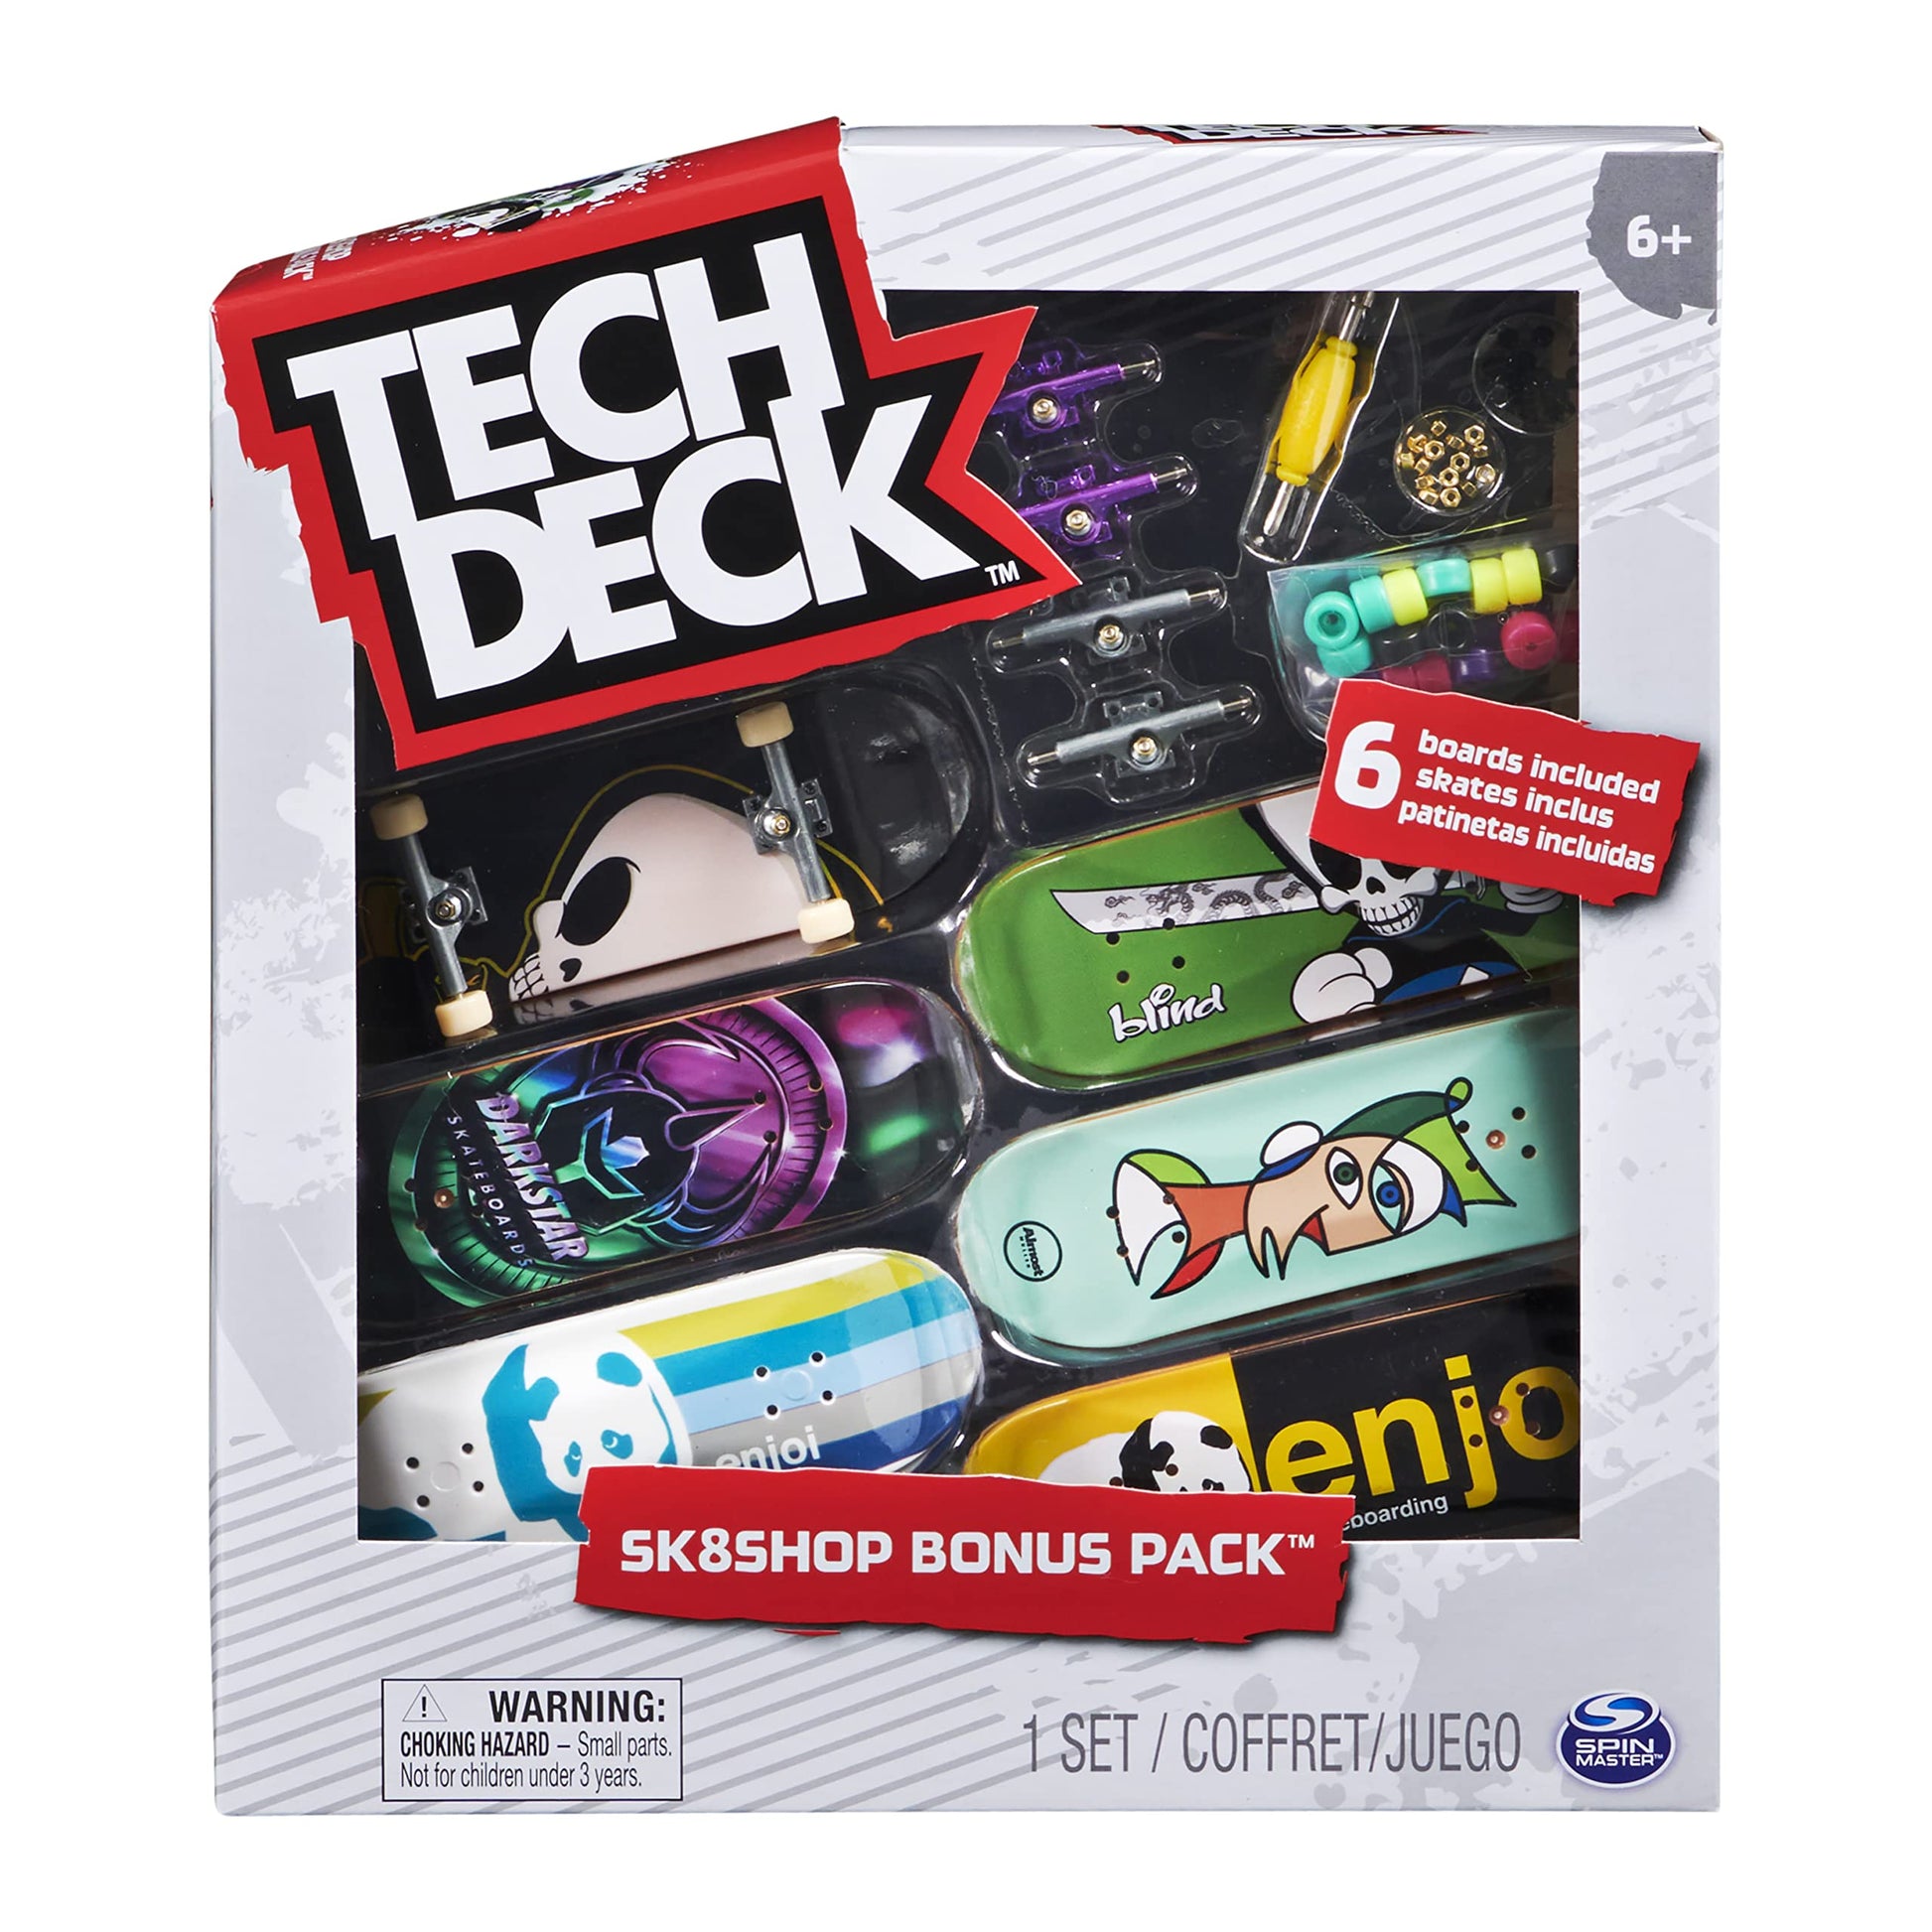 Tech Deck Sk8 Shop Bonus Pack- 6 Fingerboard Pack – The Groove Skate Shop